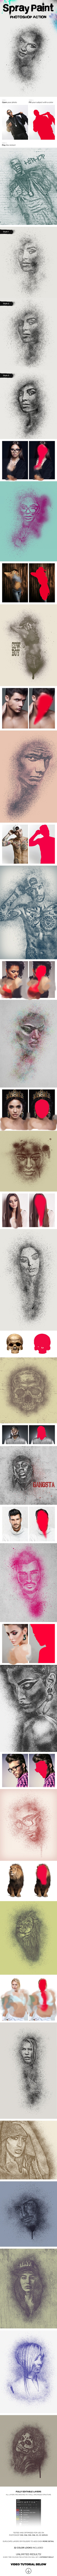 اکشن فتوشاپ نقاشی اسپری